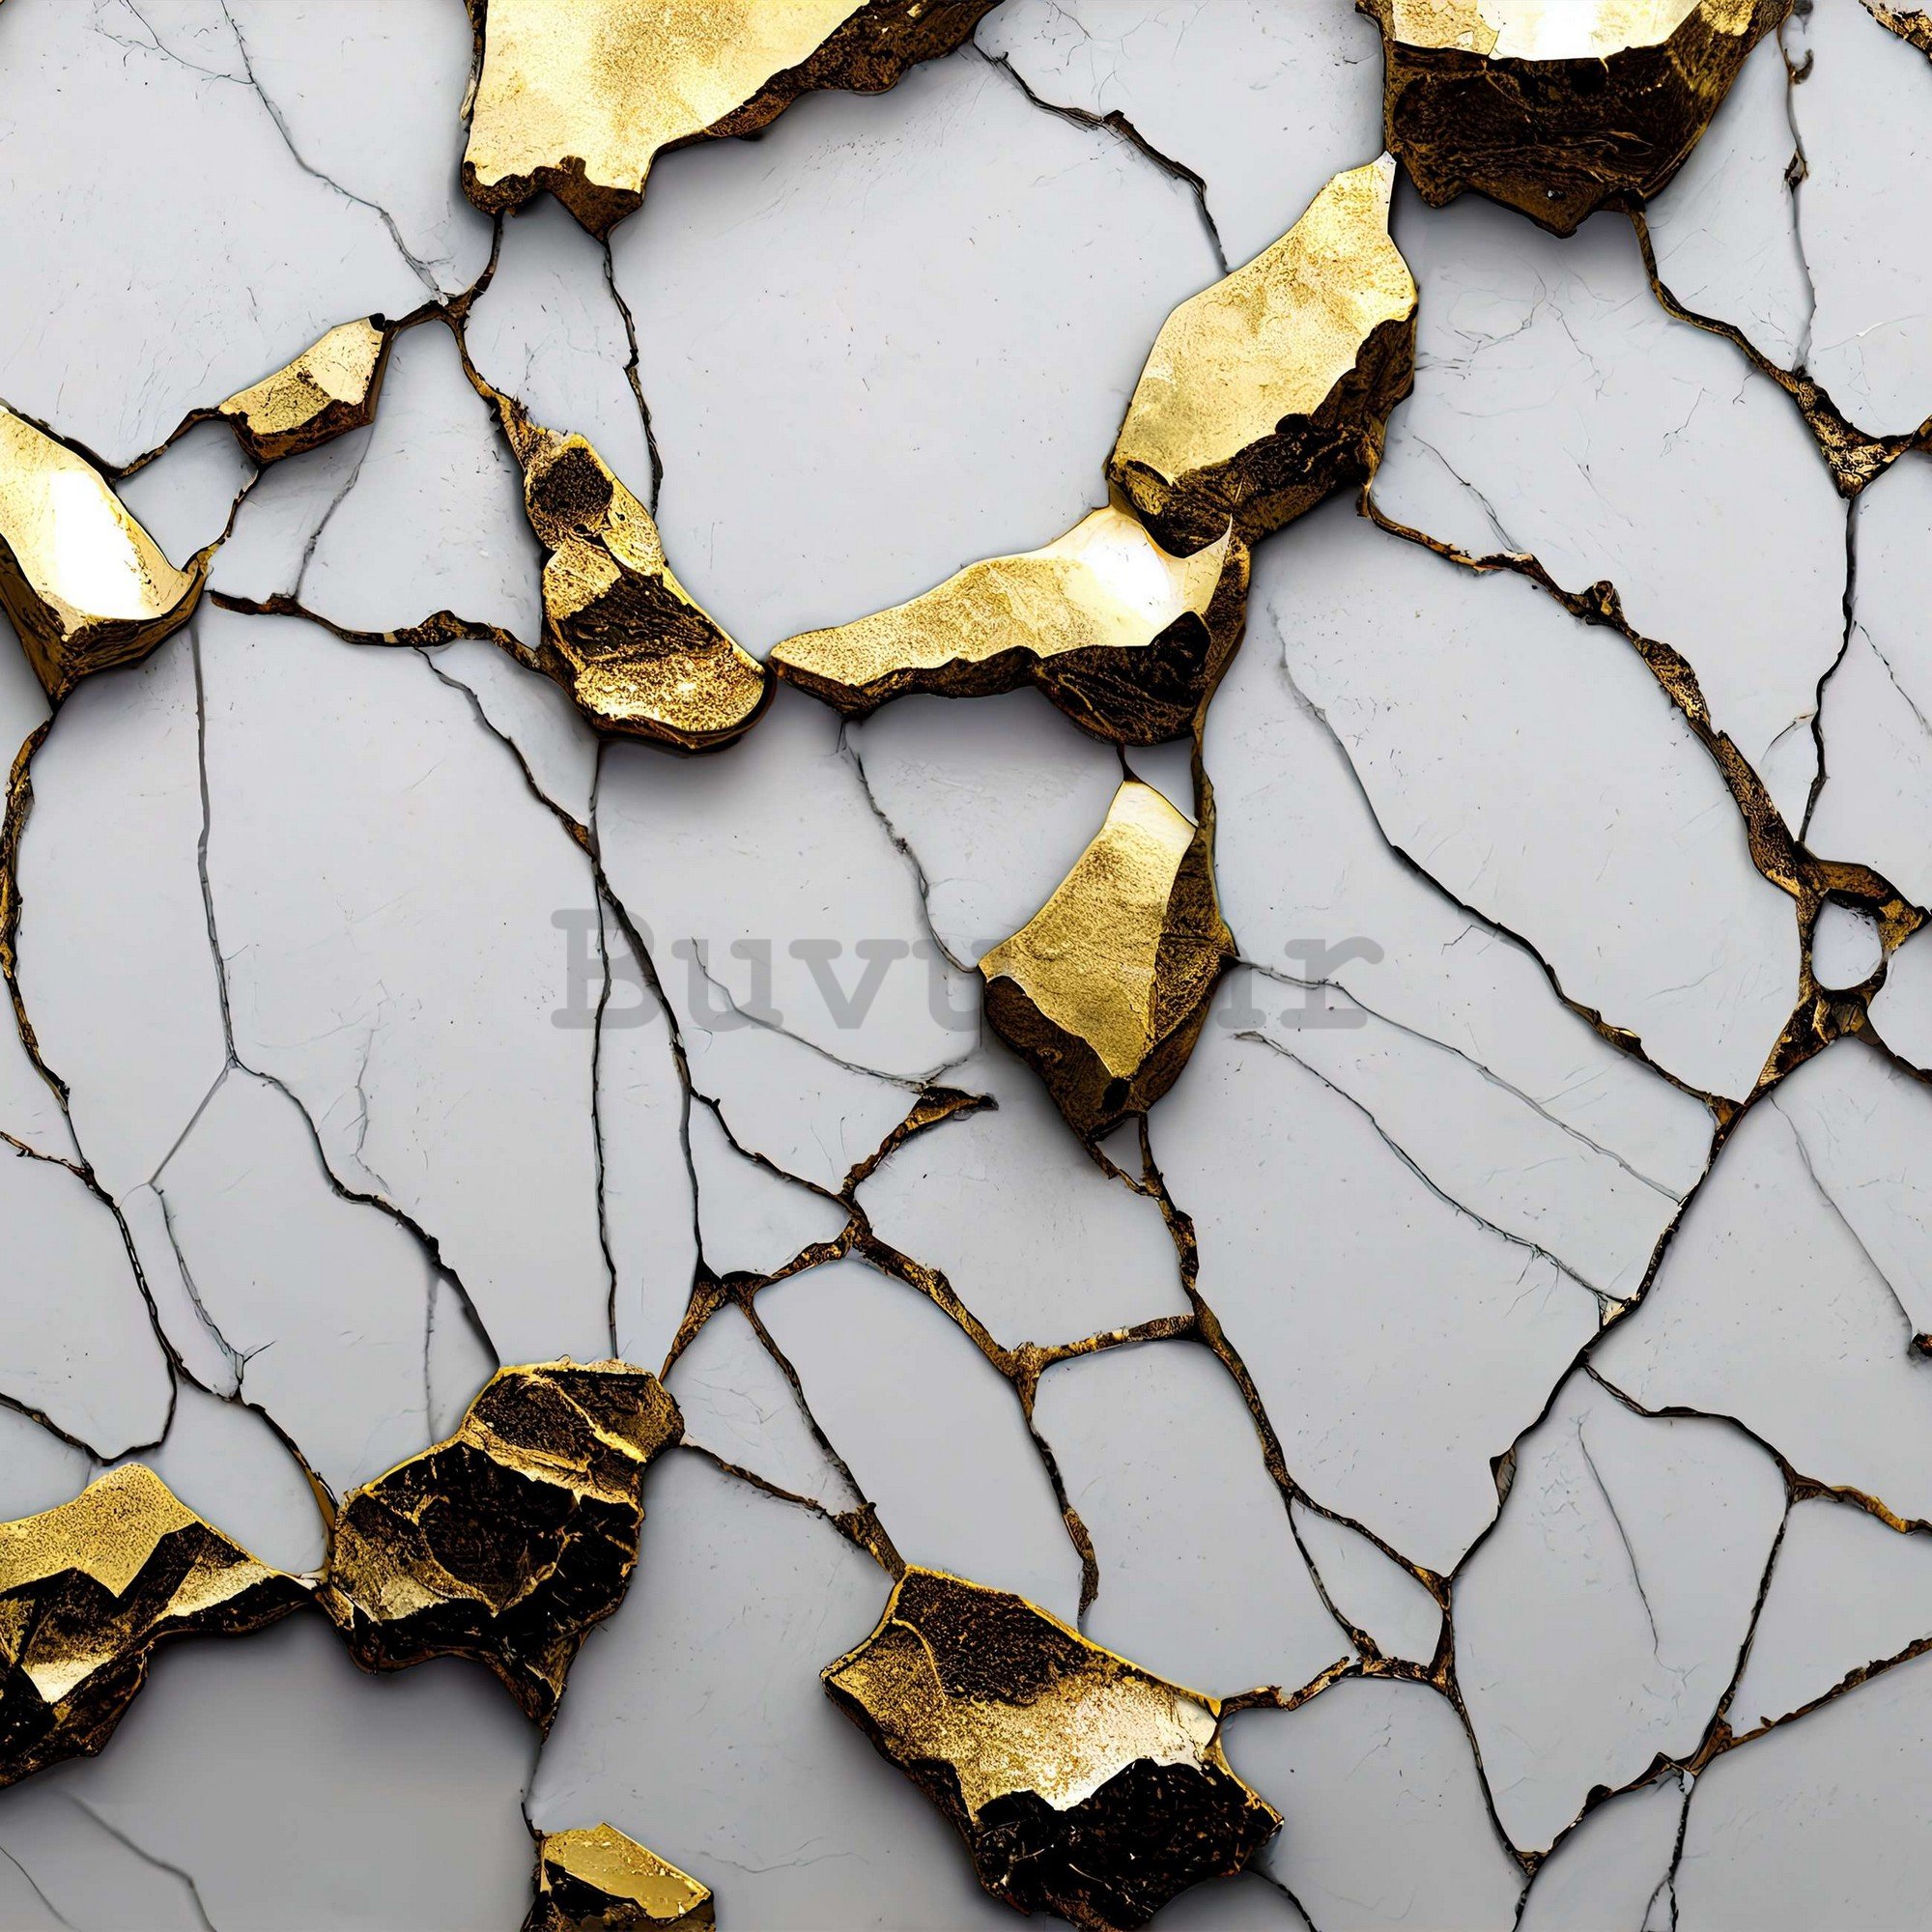 Vlies foto tapeta: Glamurozna imitacija zlatnog mramora s bijelim zidom - 368x254 cm